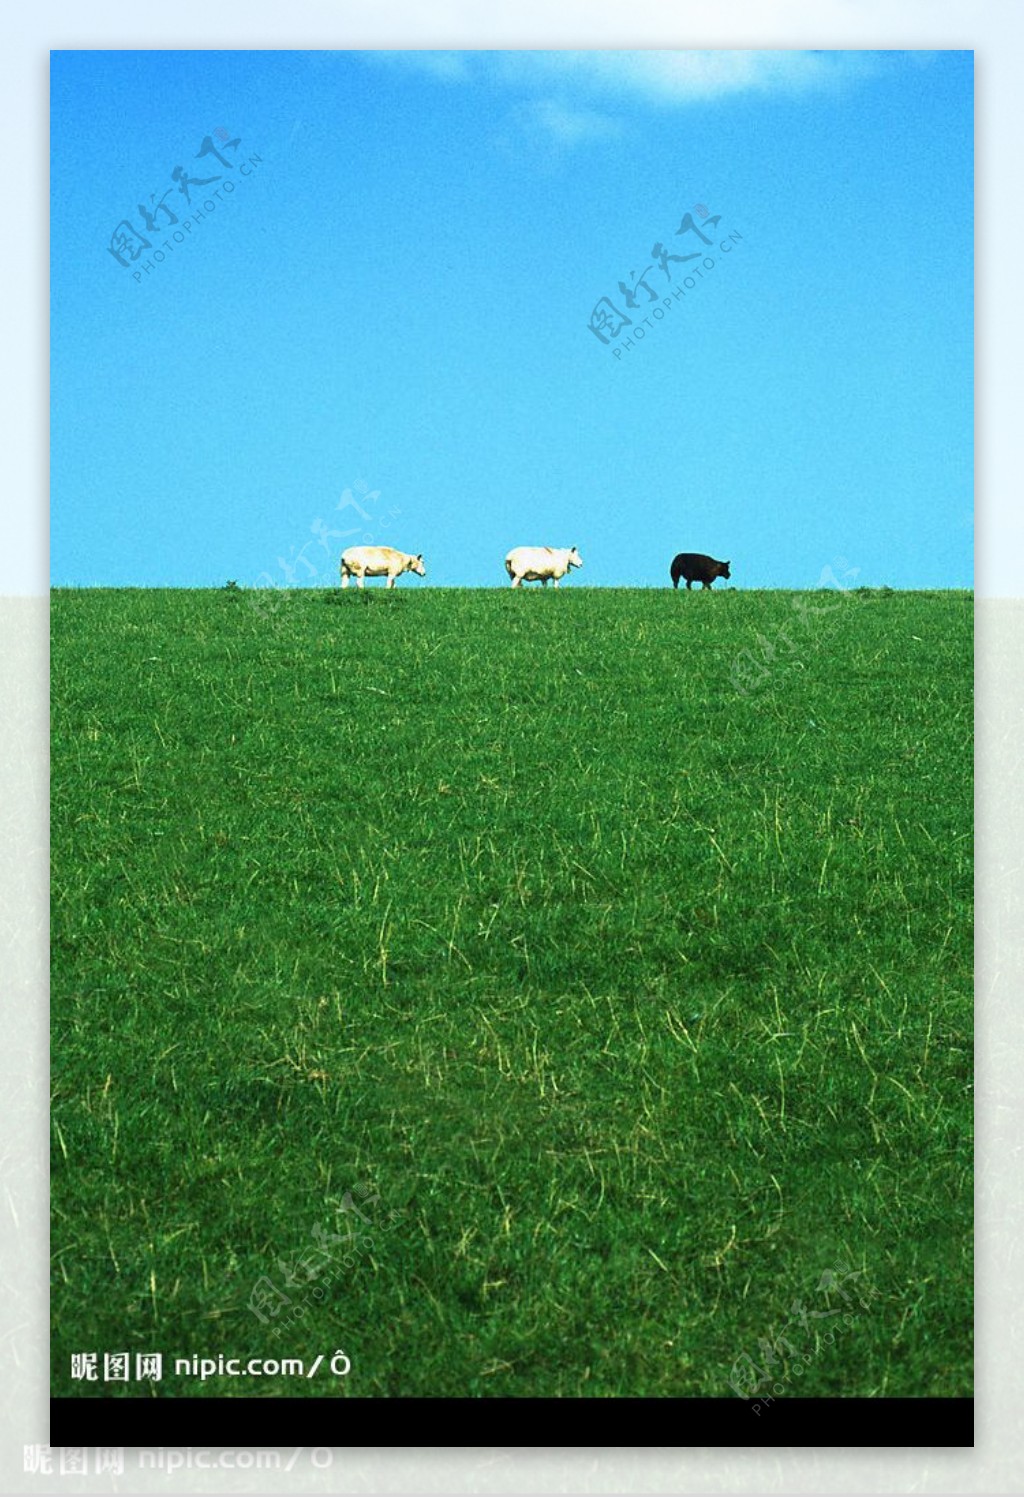 羊三只羊碧草蓝天图片